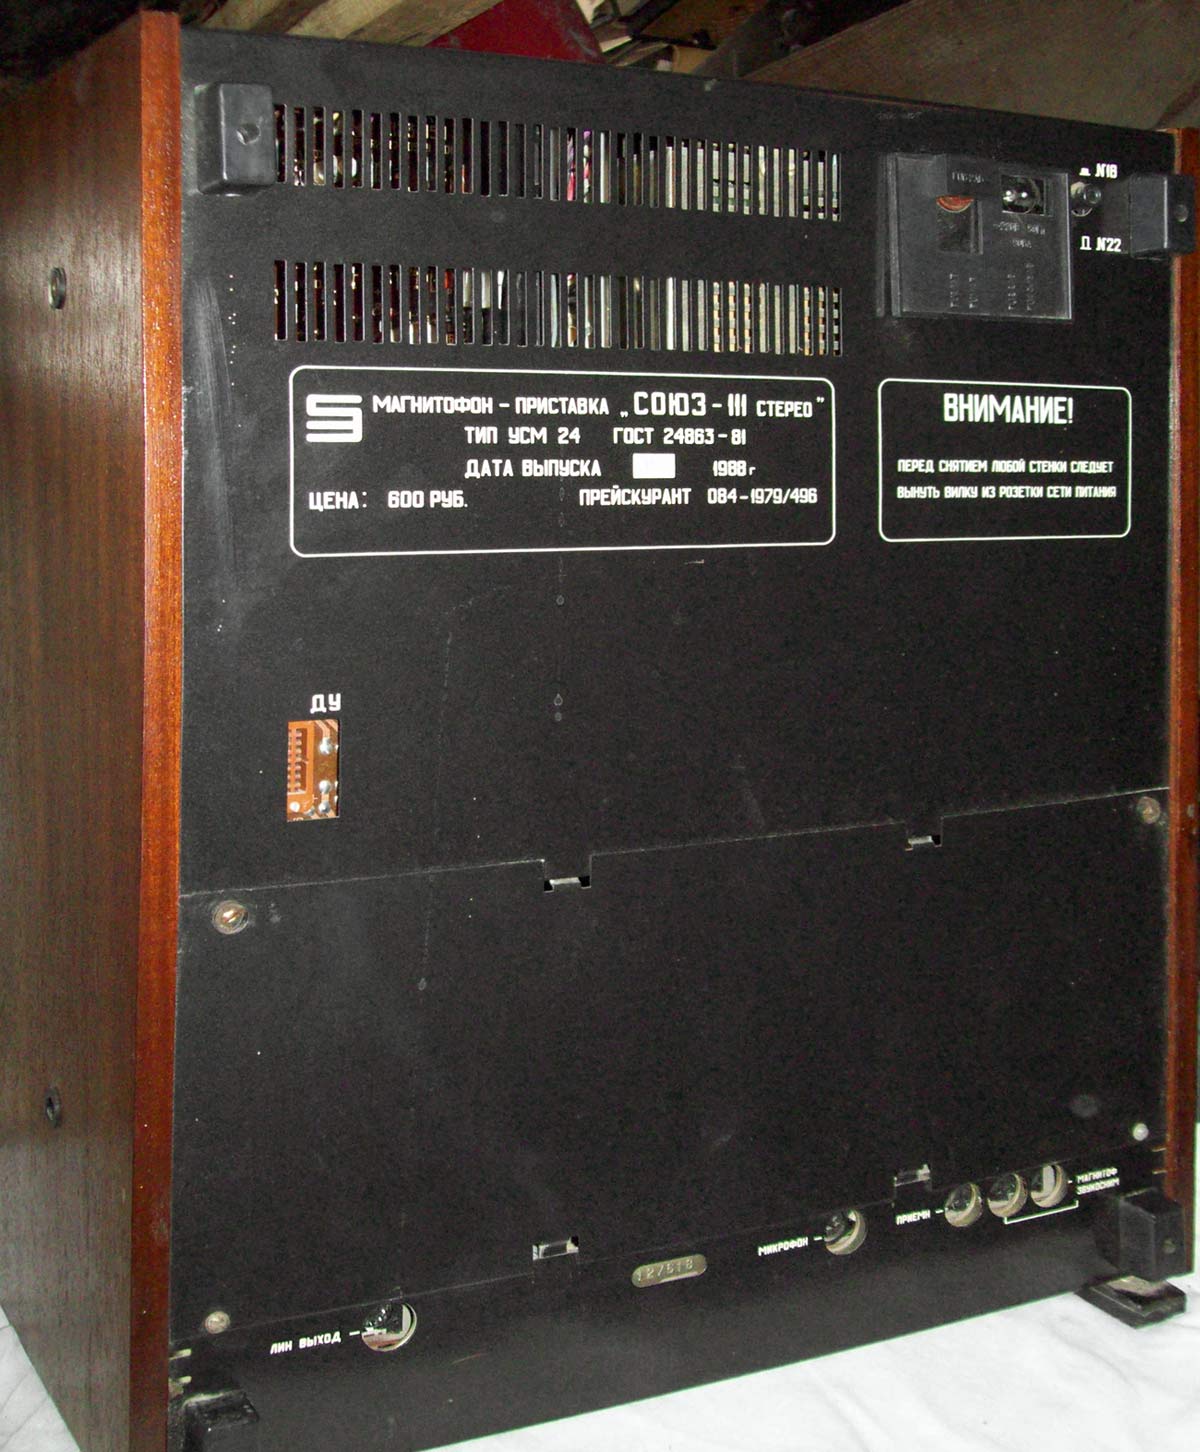 Союз-111-стерео